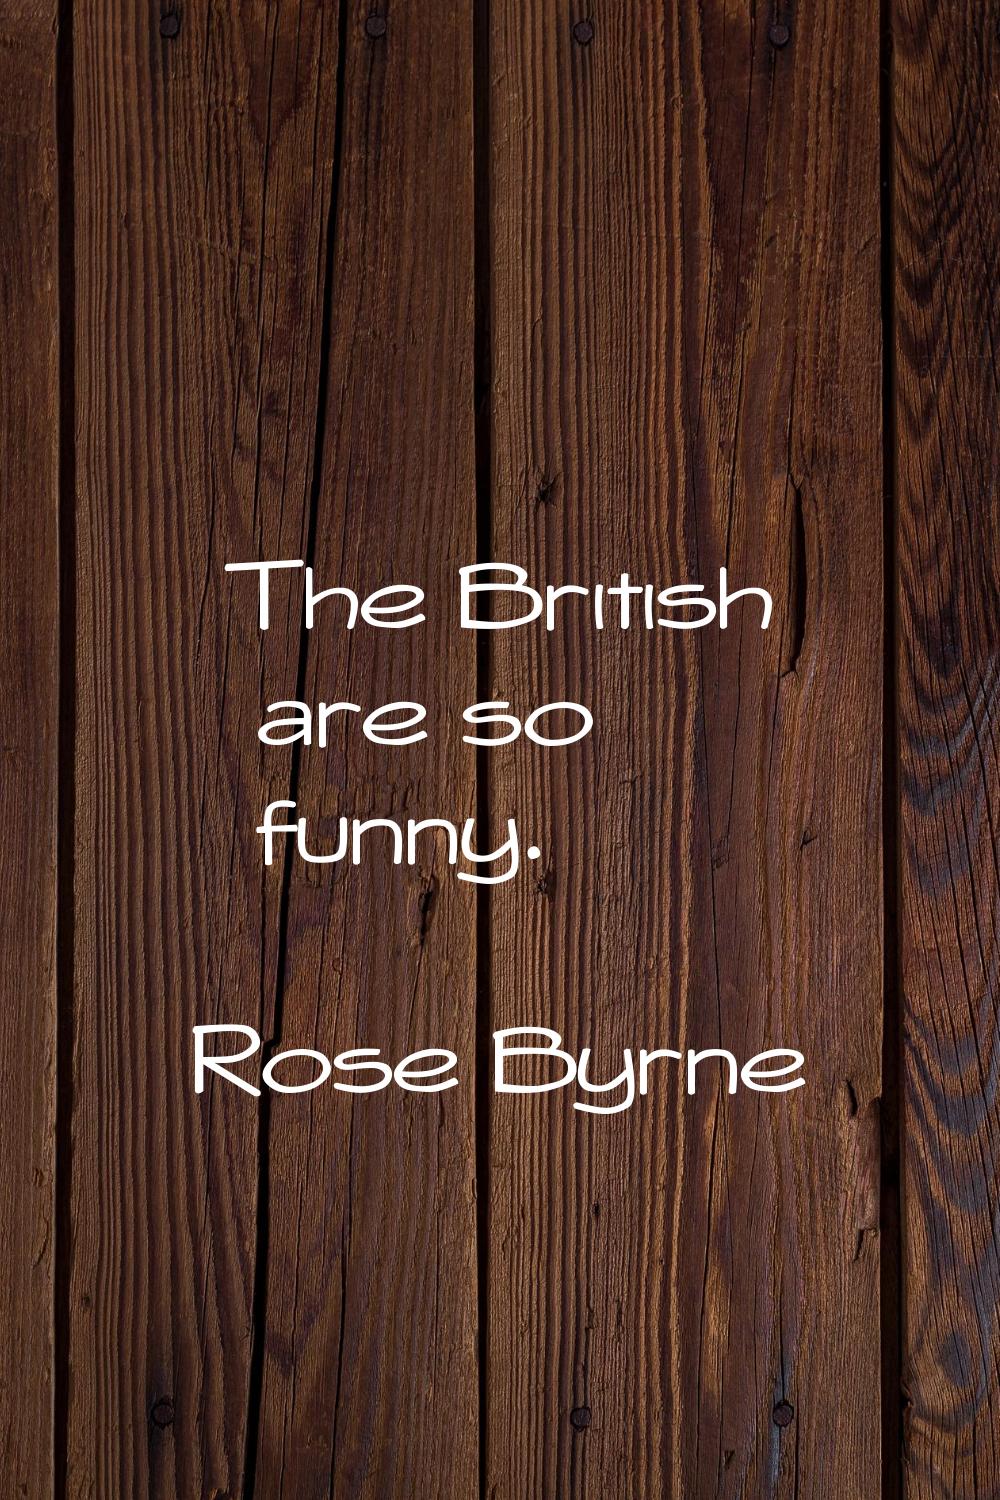 The British are so funny.